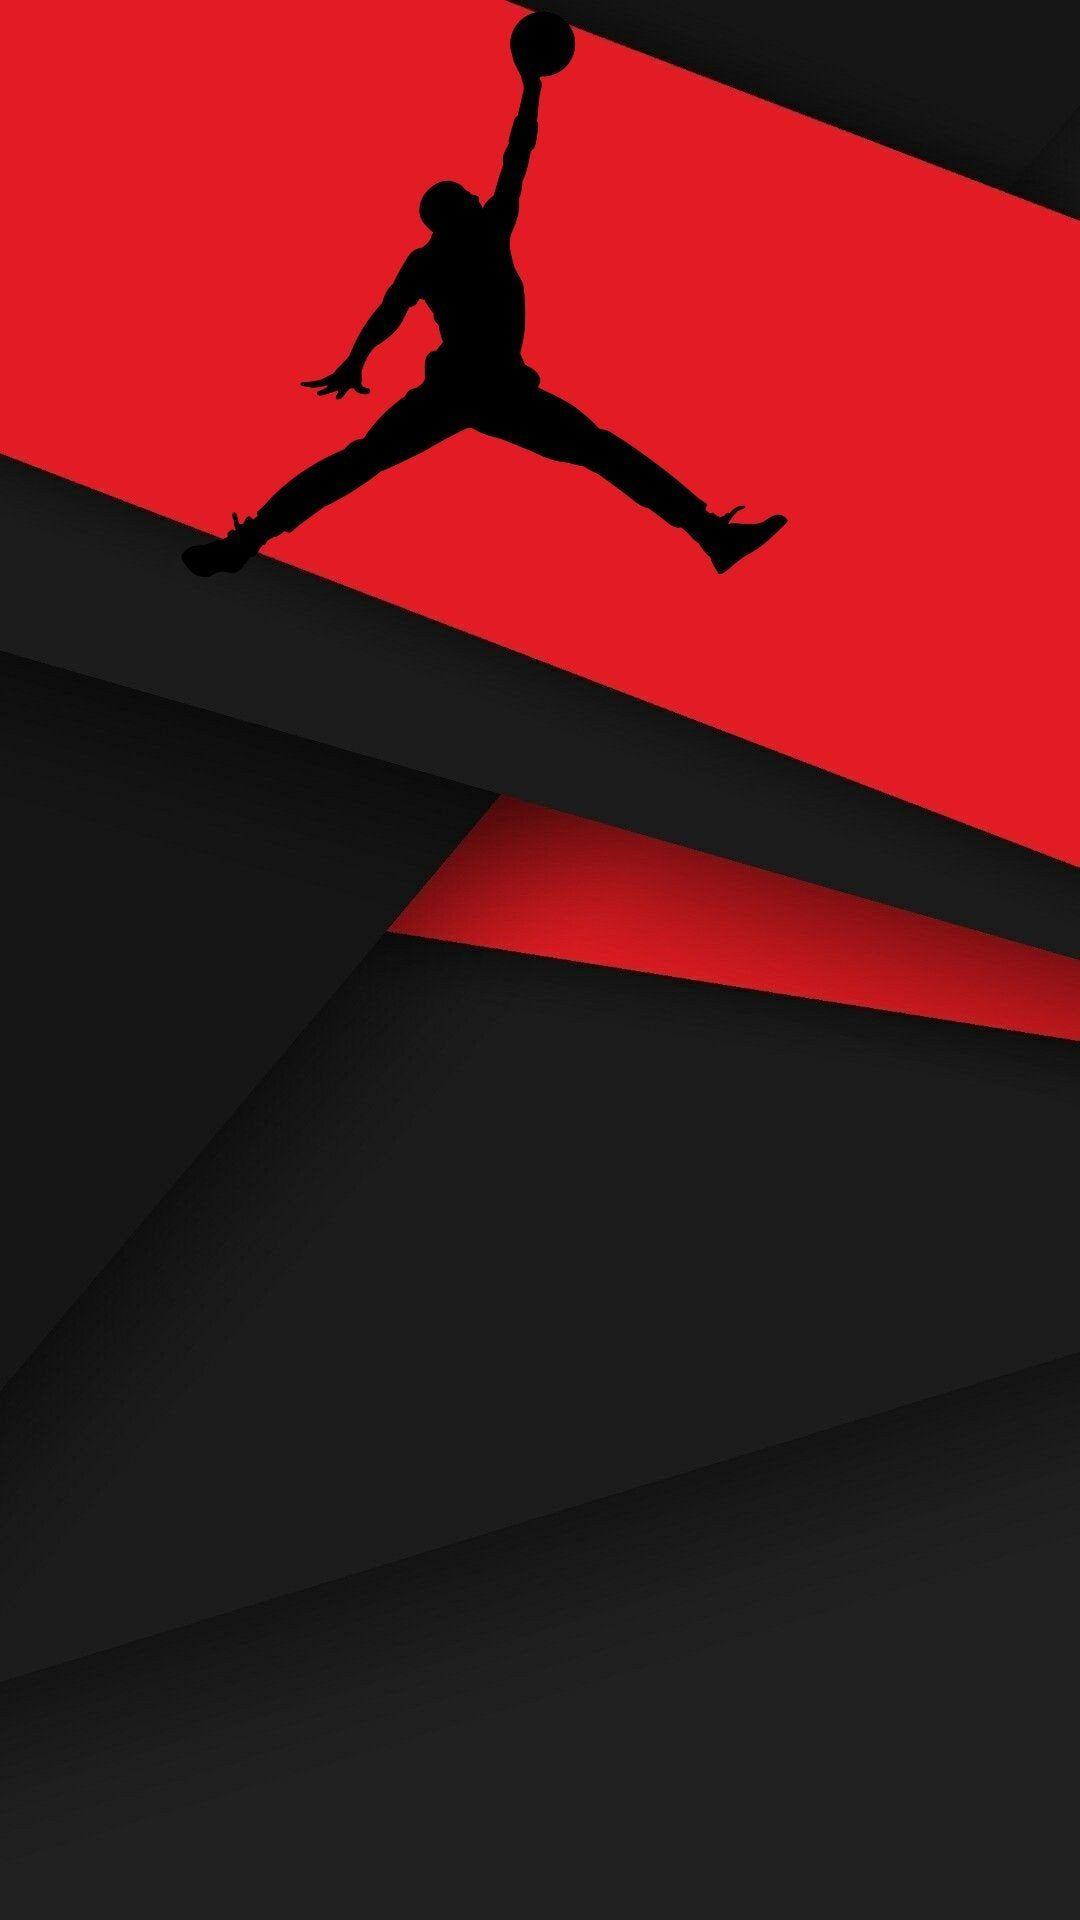 jordan logo red and black